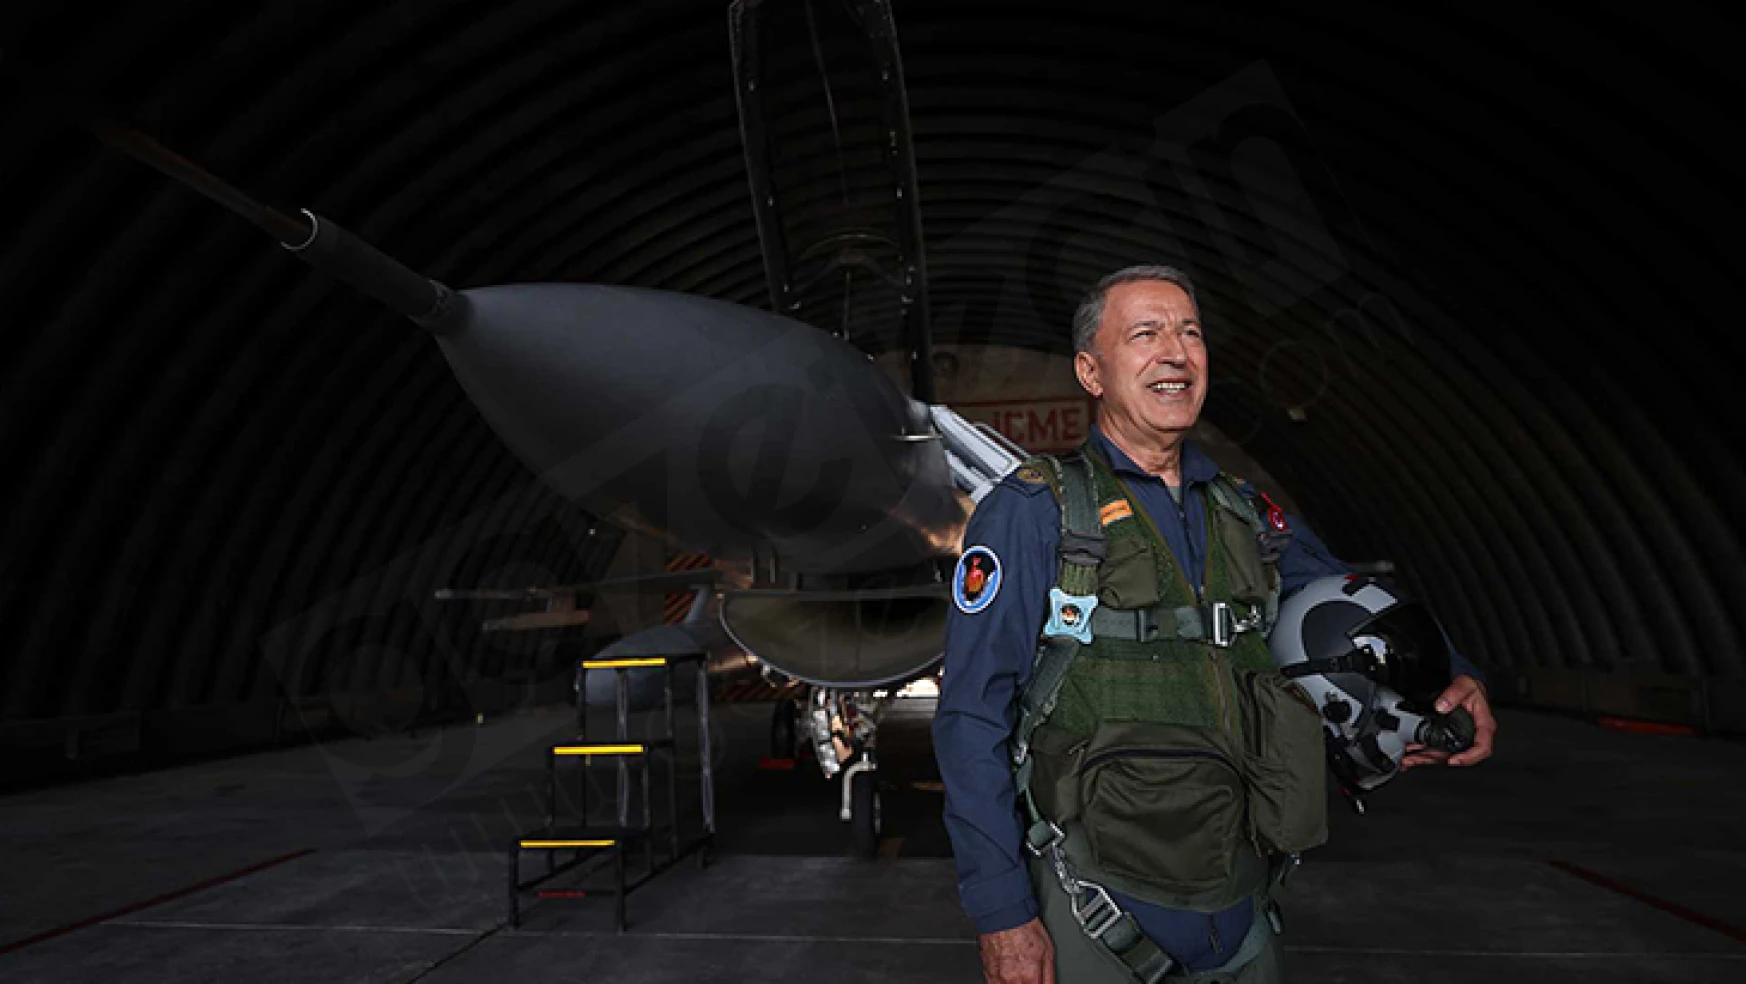 Bakan Akar, Uçuş Eğitim Yılı'nın açılışında F-16 kullandı